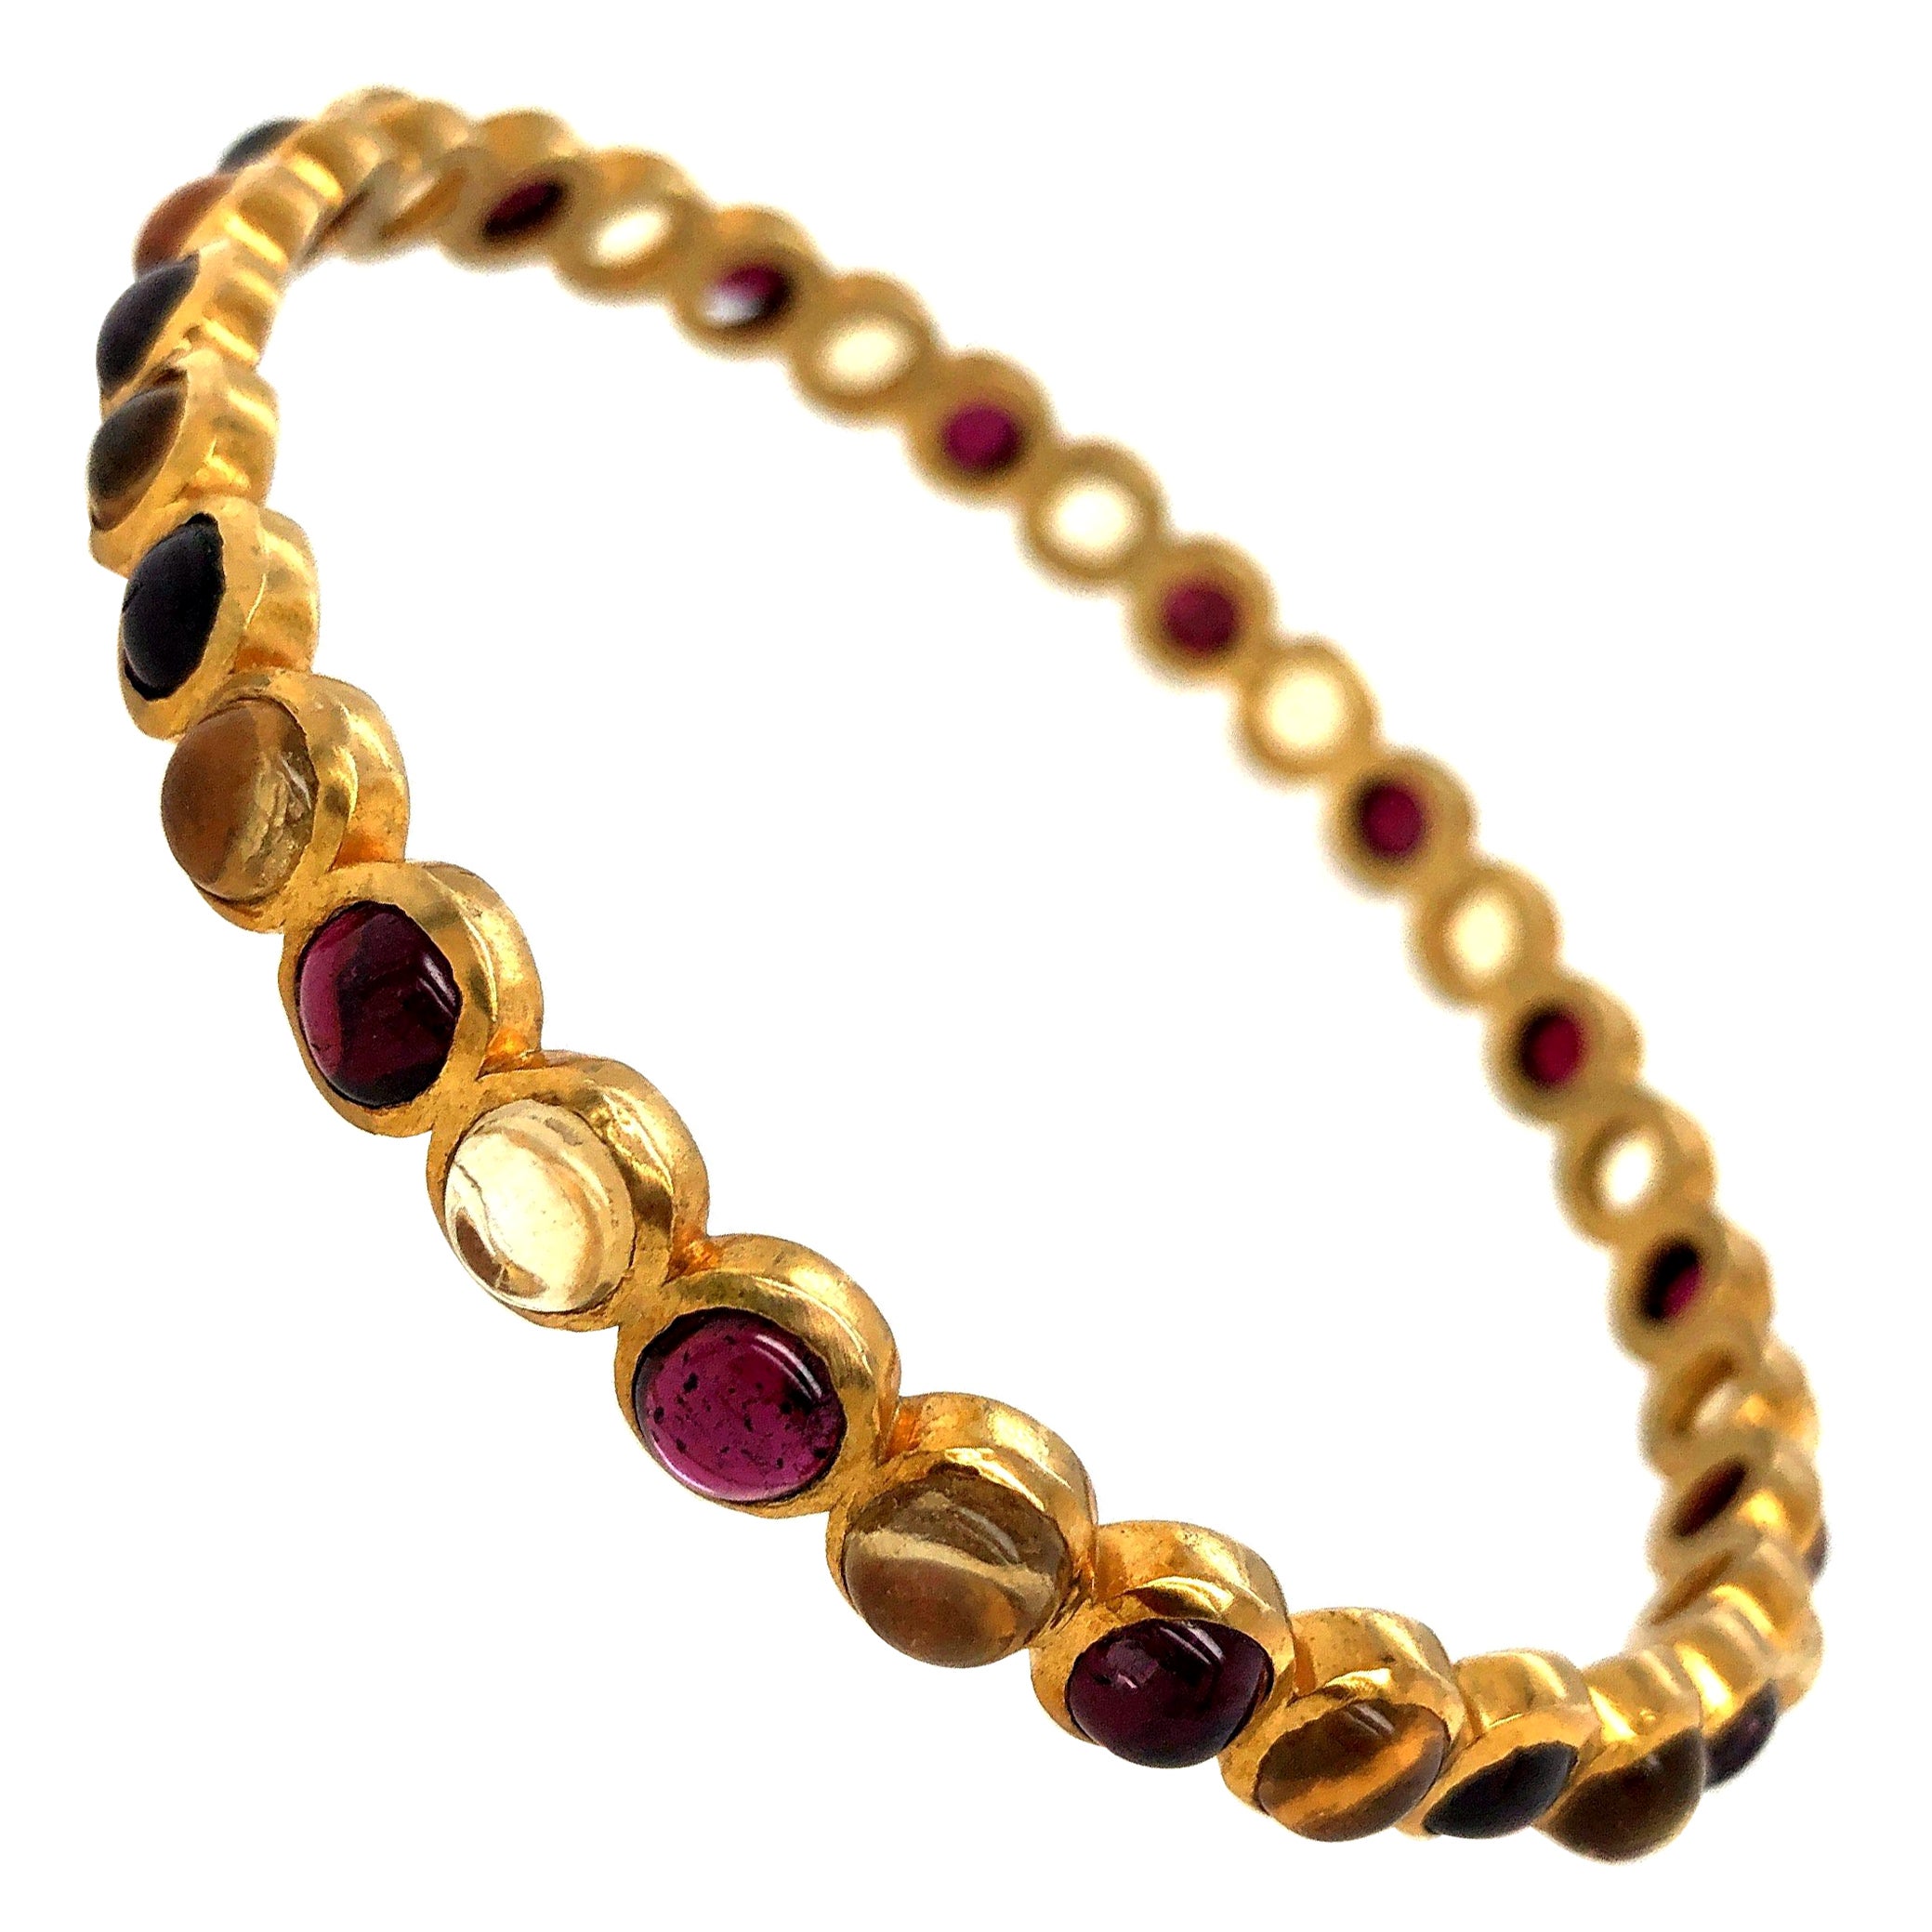 Cleopatra Bracelet - 6 For Sale on 1stDibs